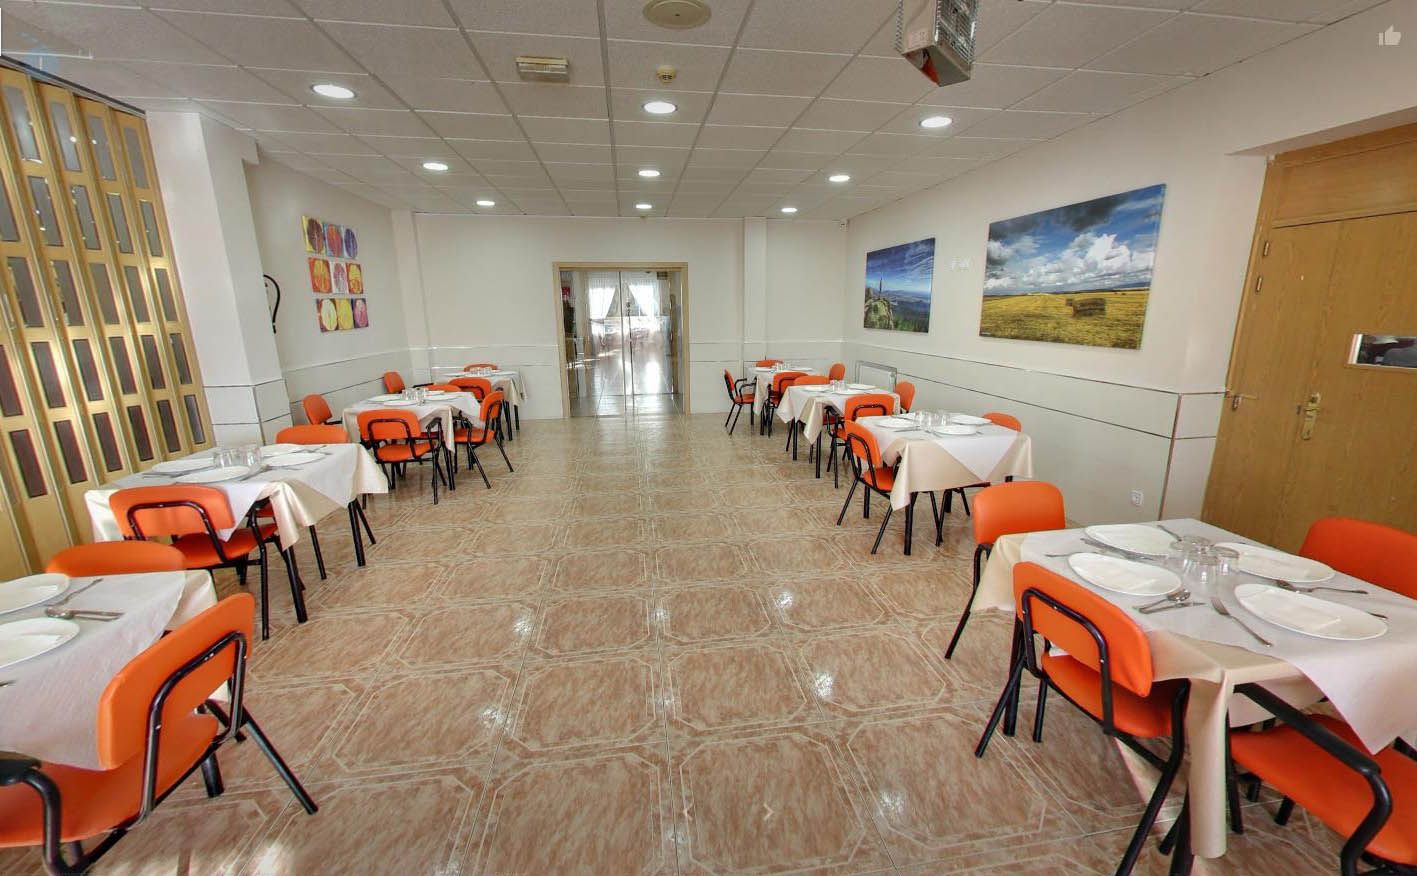 Foto 6 de Residencias geriátricas en Manzanares el Real | Ponderosa Real Hotel Residencia para Mayores